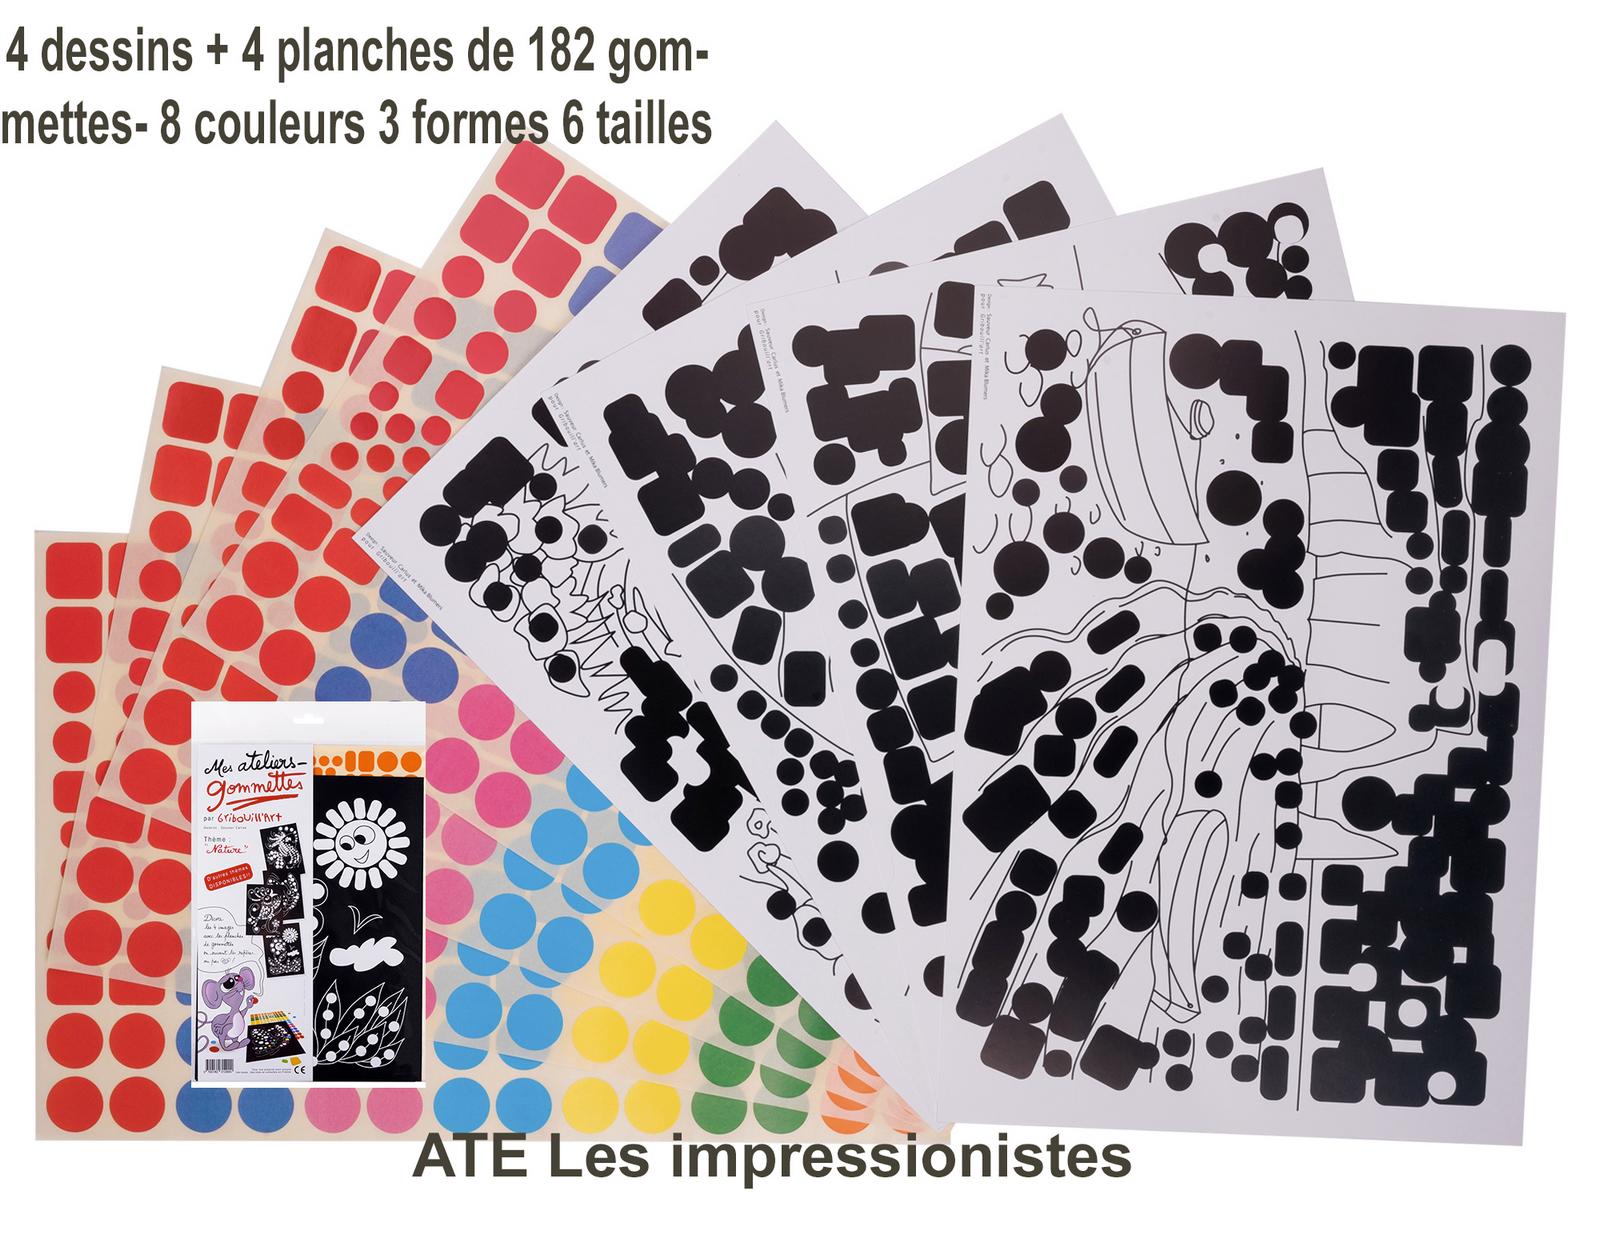 88 -ATE Les impressionnistes